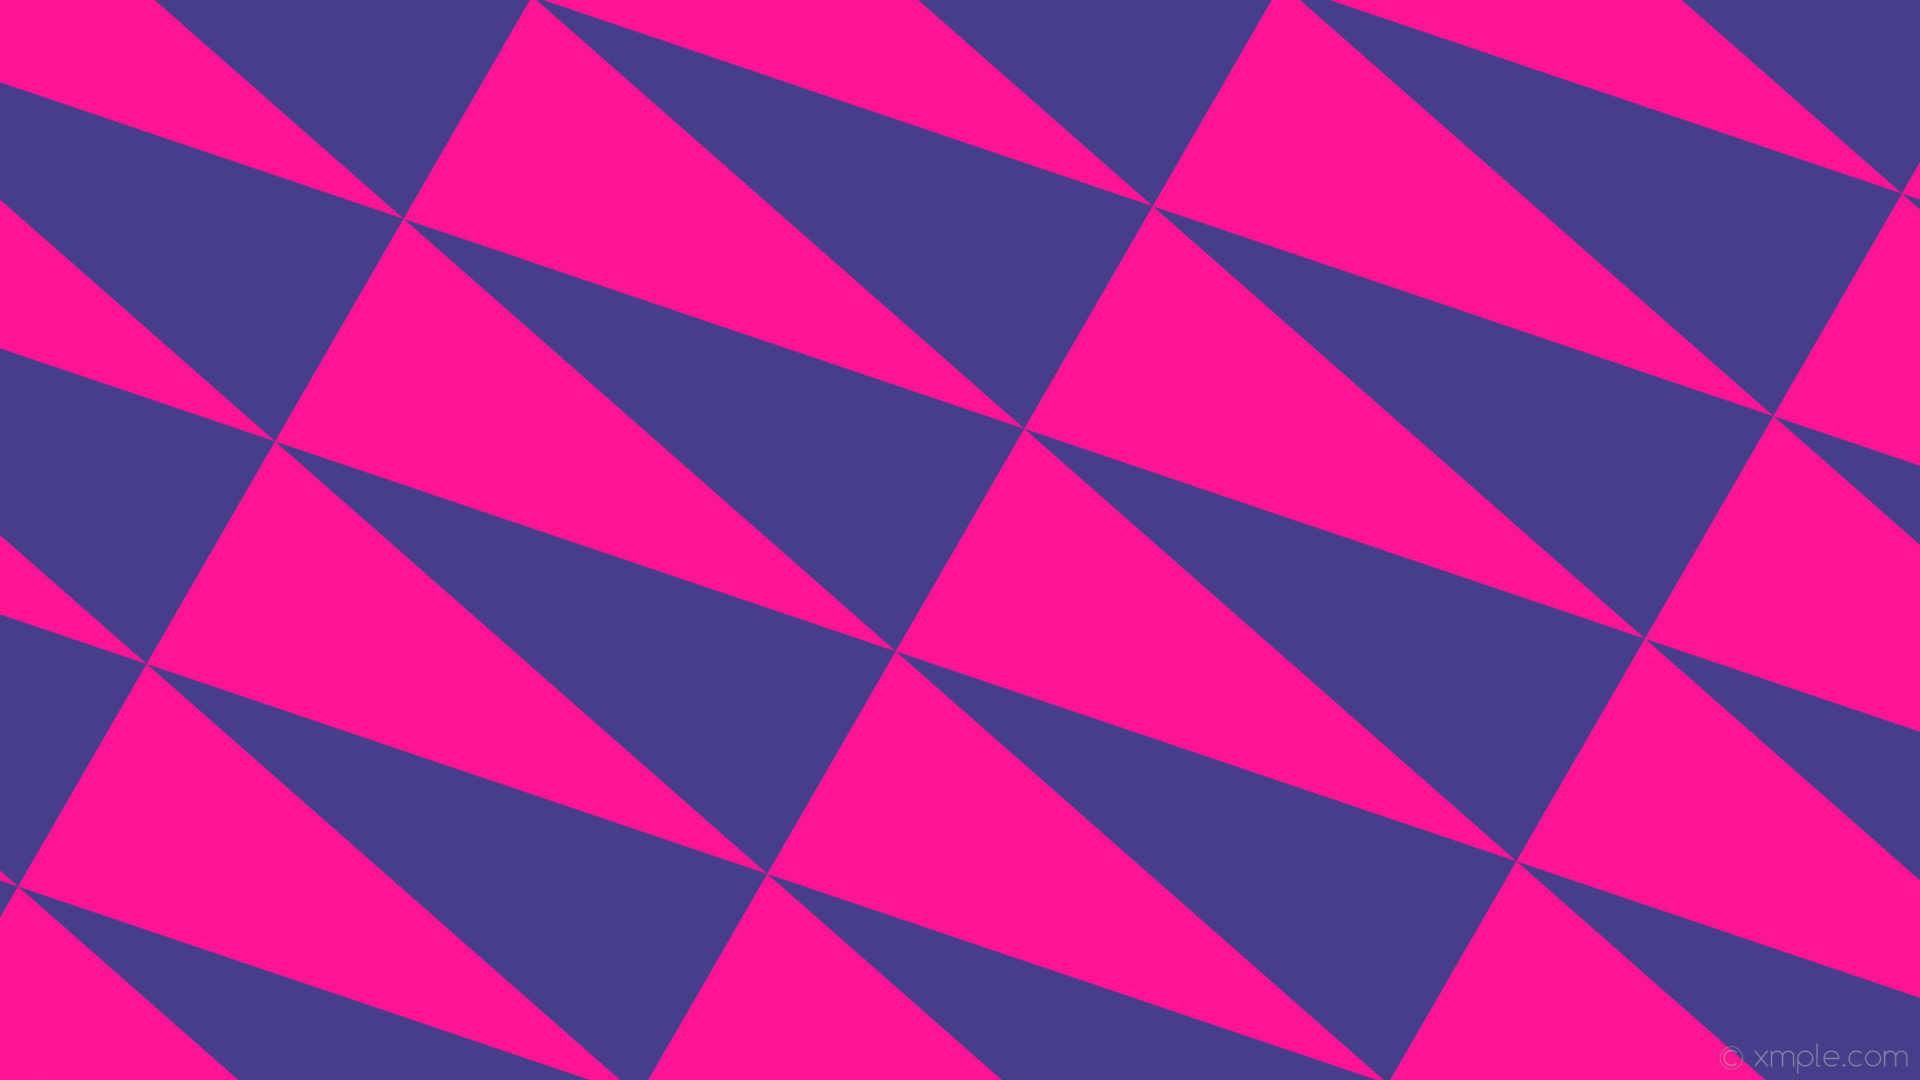 1920x1080 wallpaper triangle pink purple dark slate blue deep pink #483d8b #ff1493  240Â° 257px